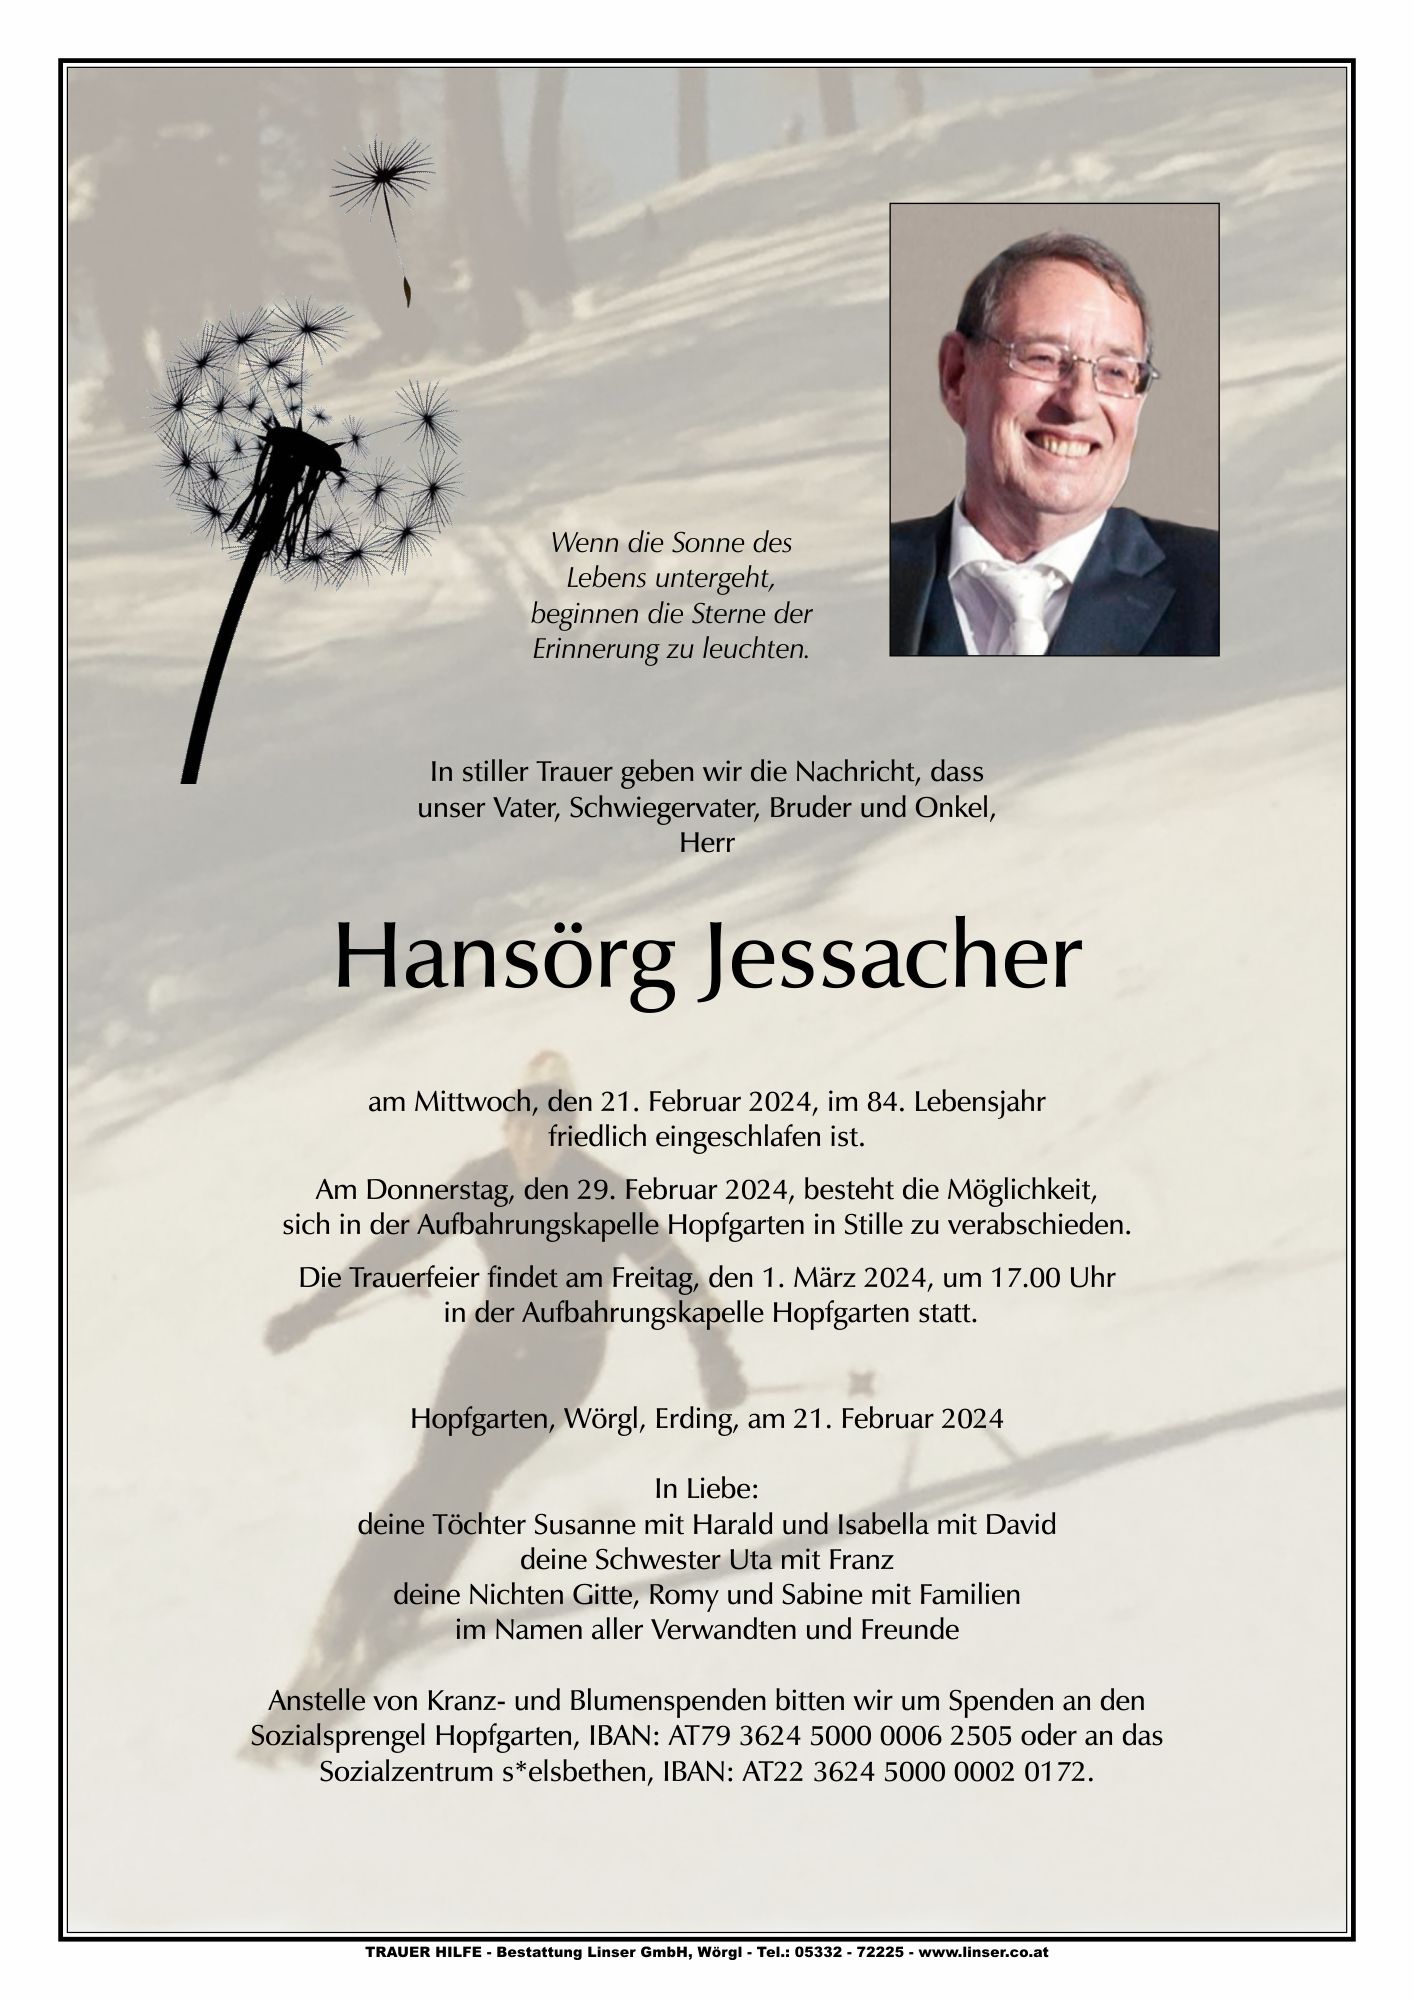 Hansörg Jessacher